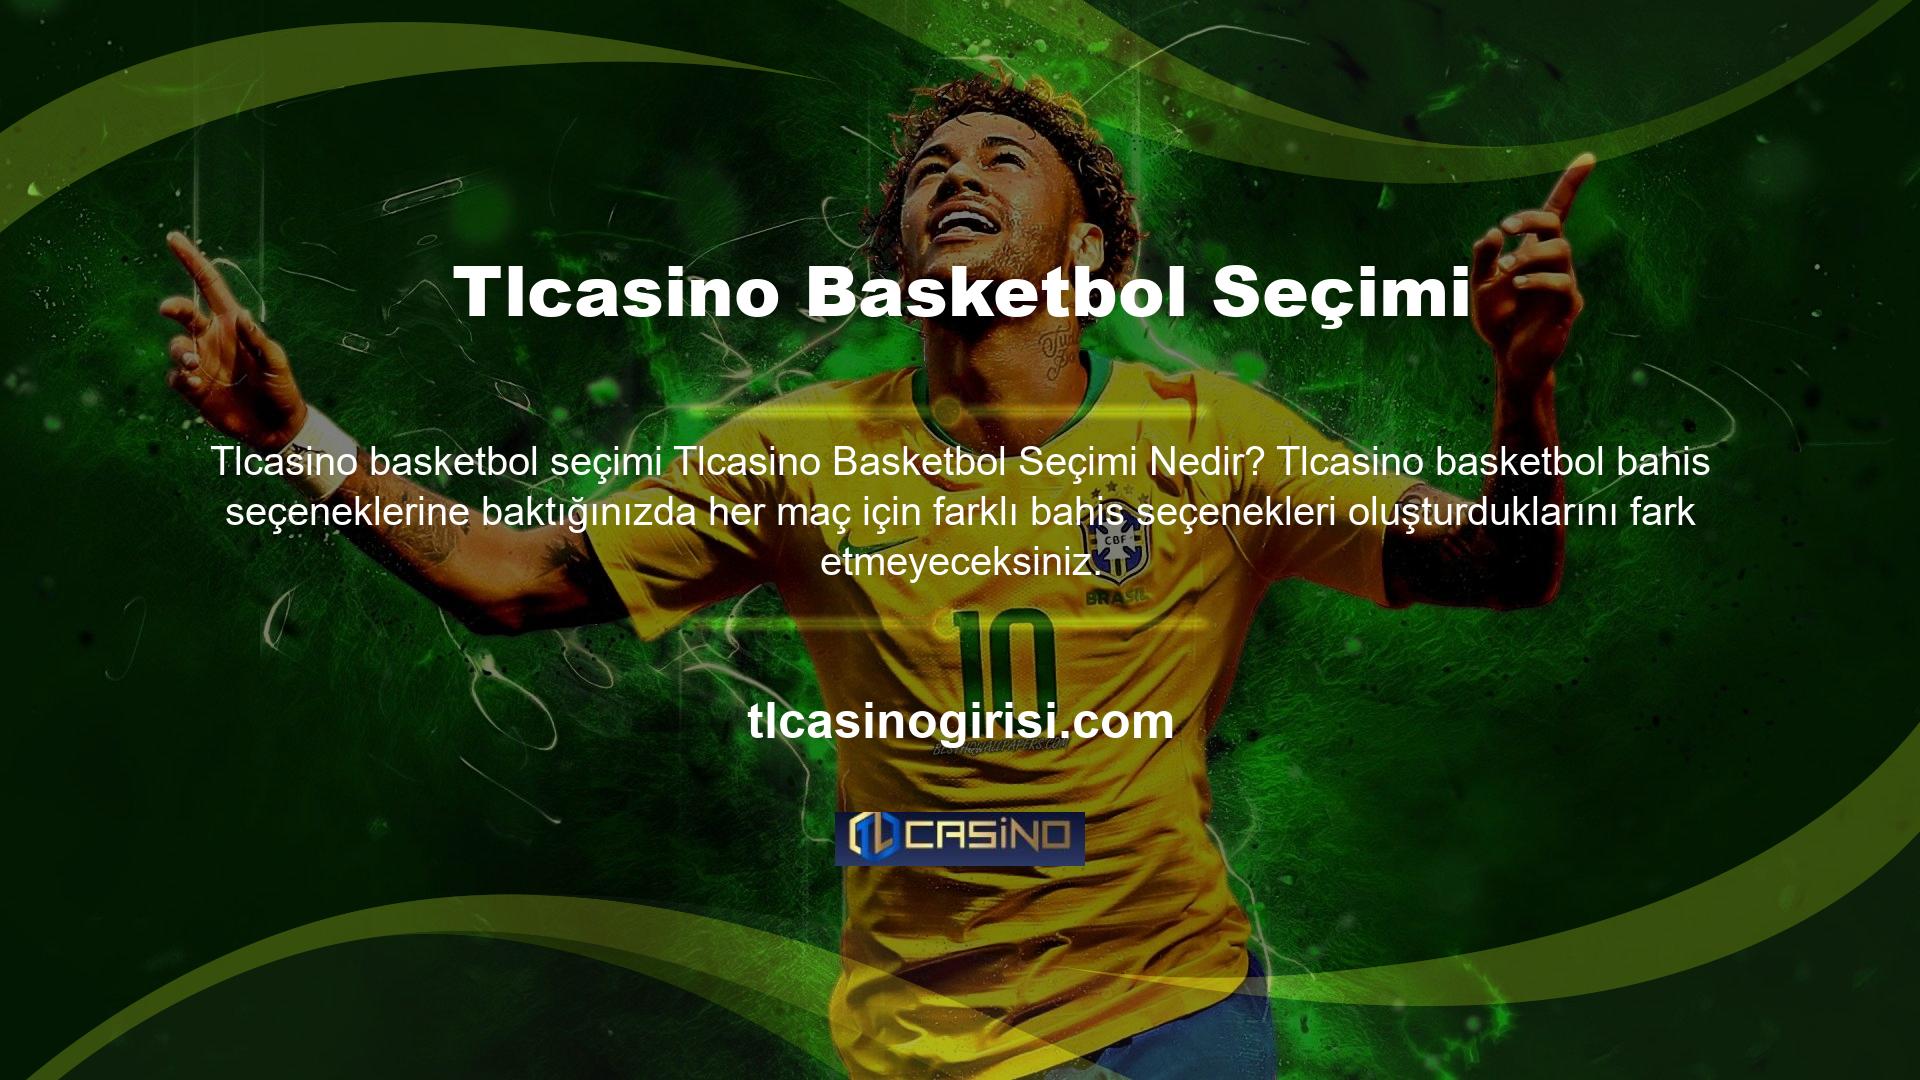 Diğer web siteleri basketbol oyunlarına bahis yapma fırsatı sunmaktadır